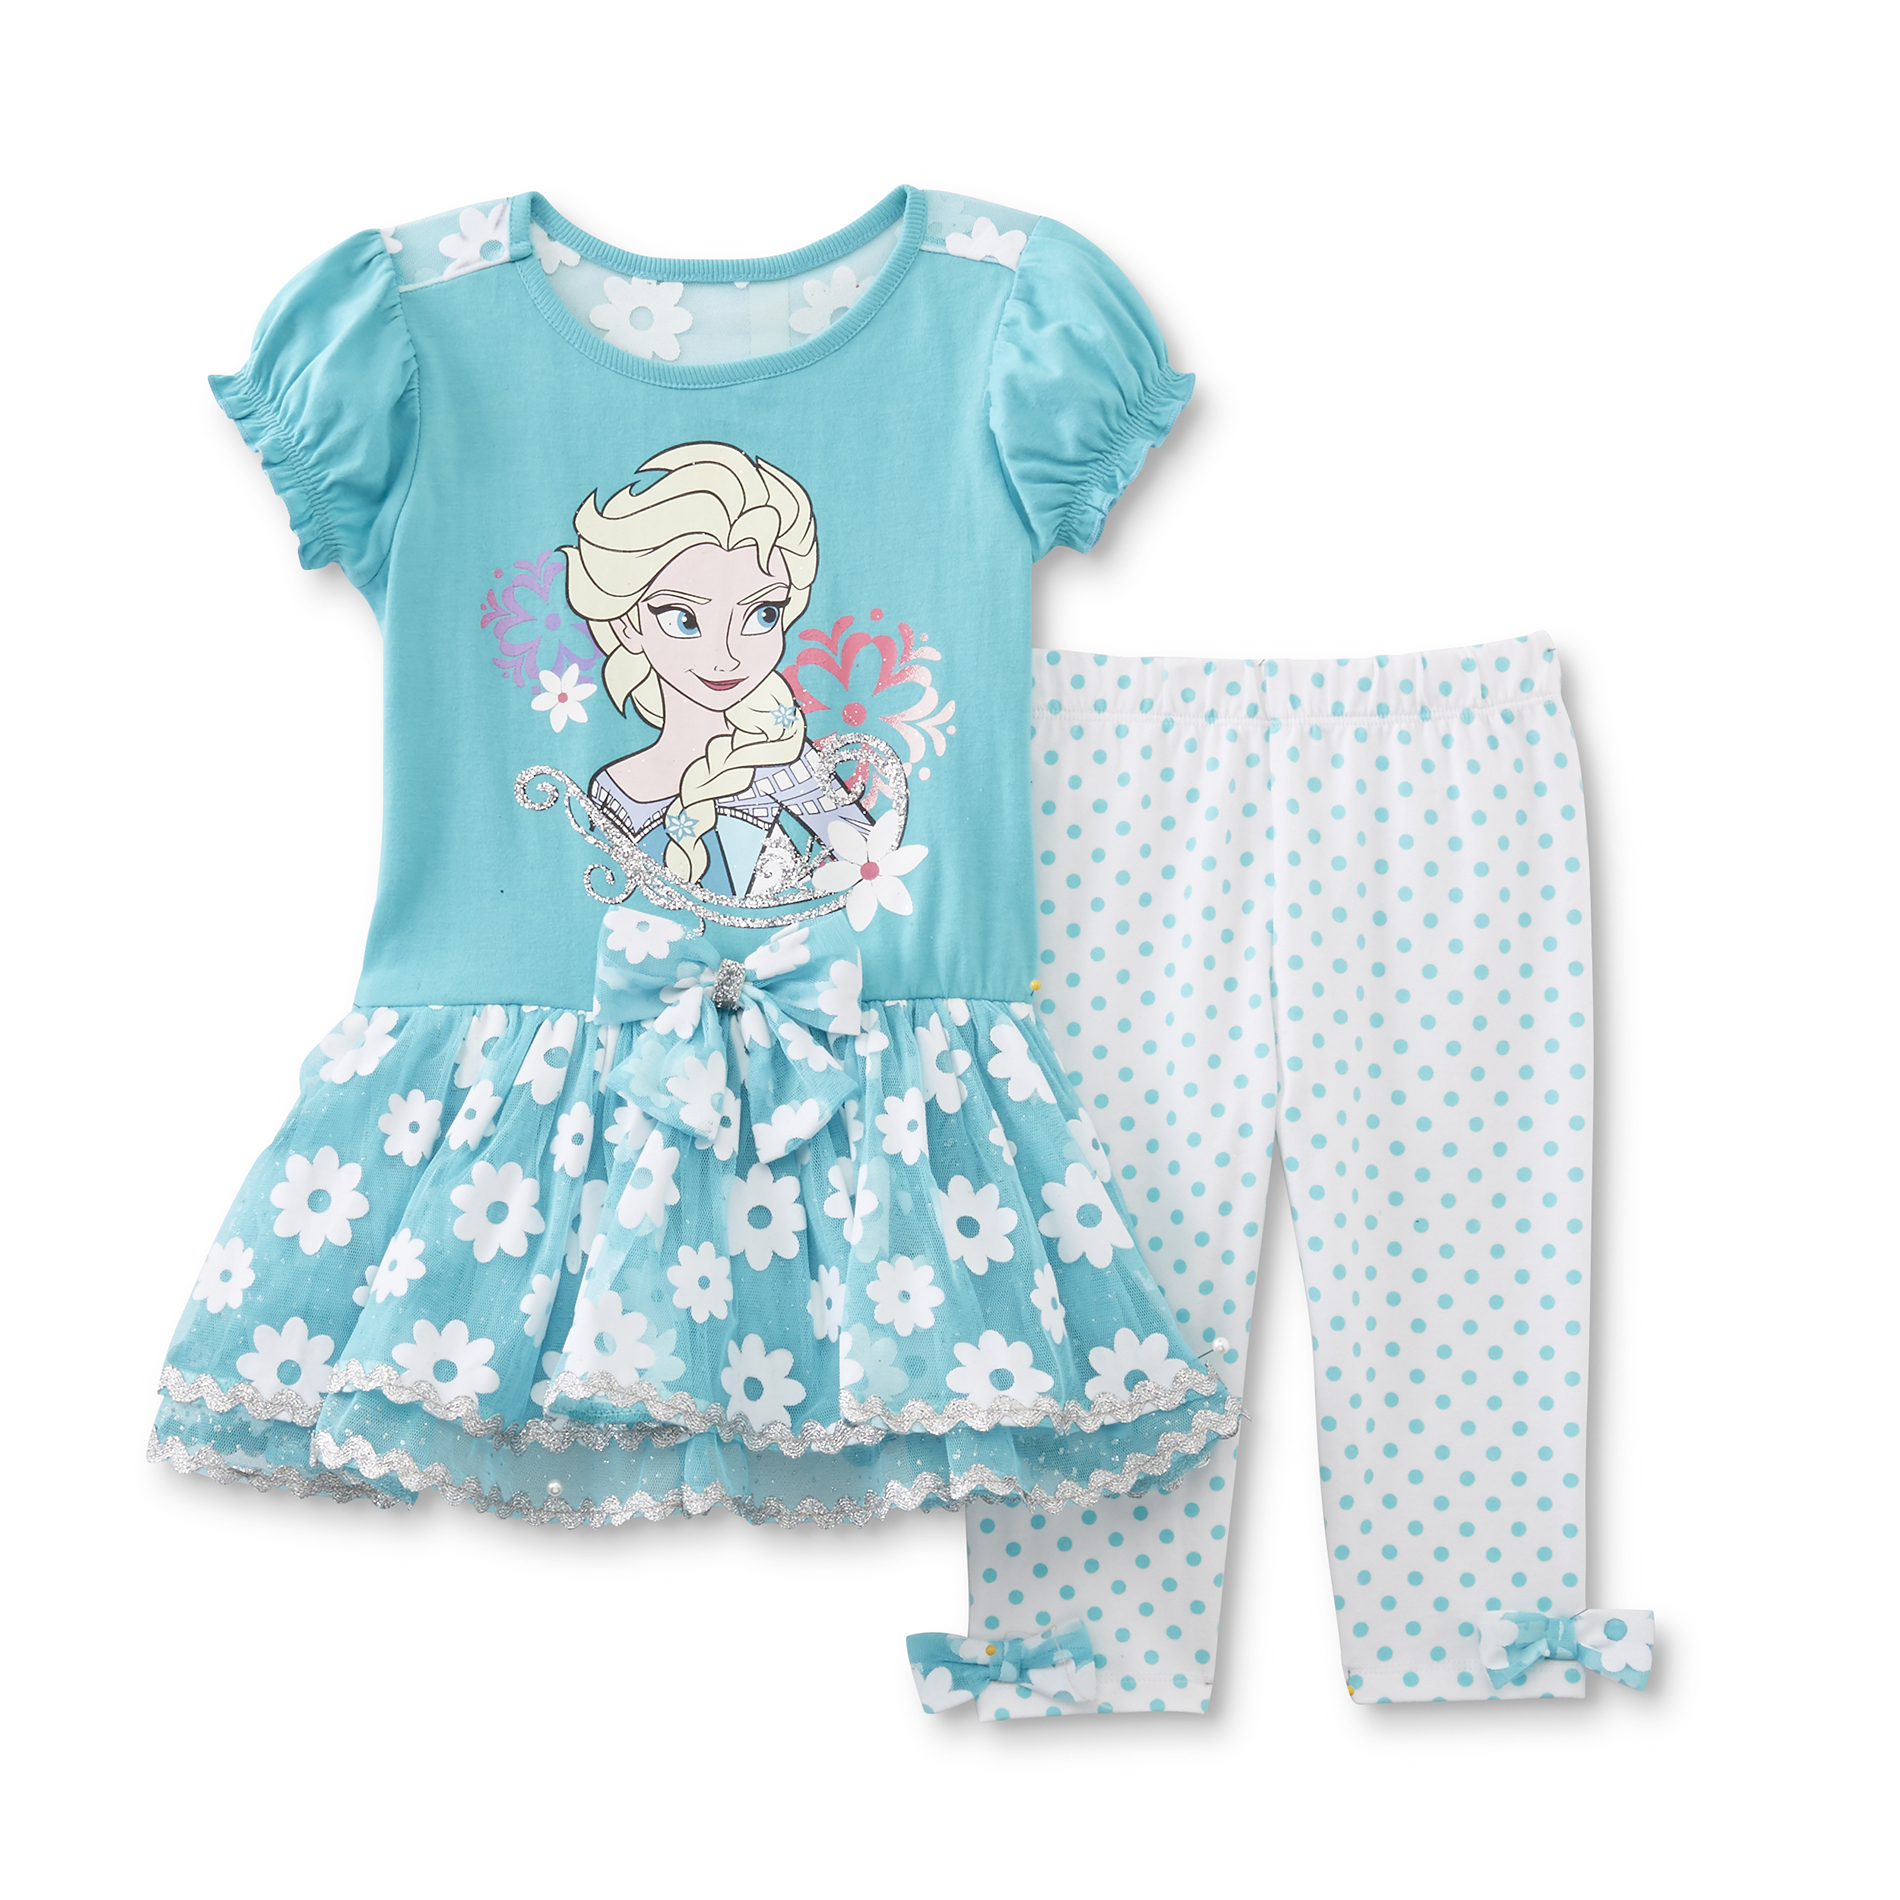 Disney Frozen Toddler Girl's Tunic Top & Leggings - Queen Elsa